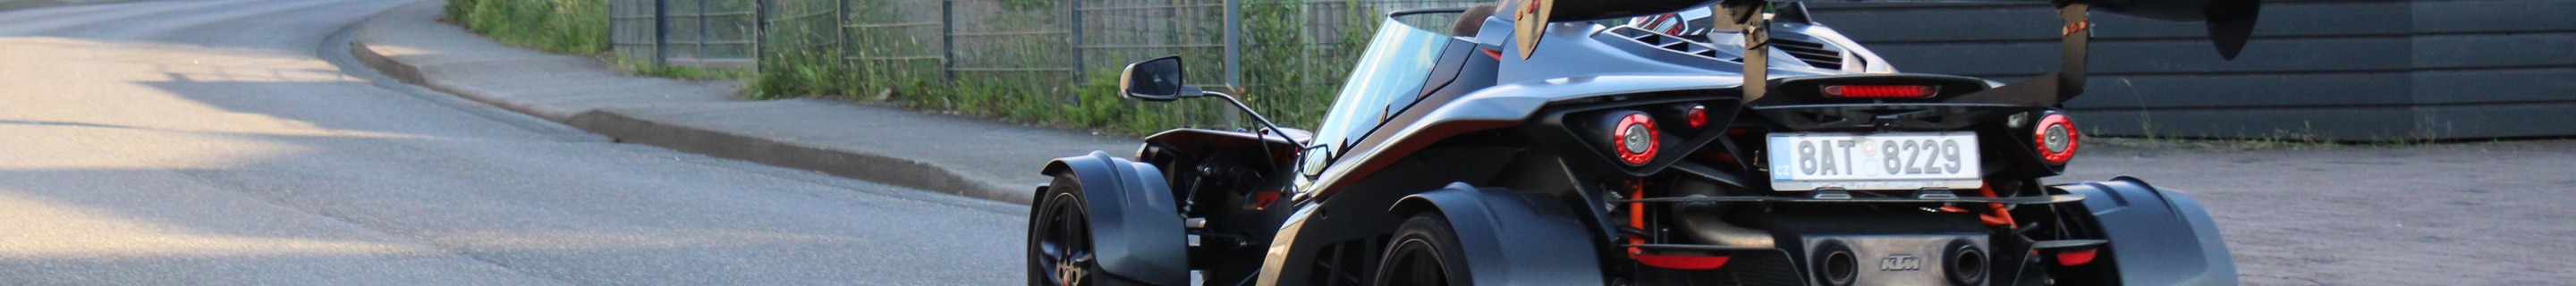 KTM X-Bow GT